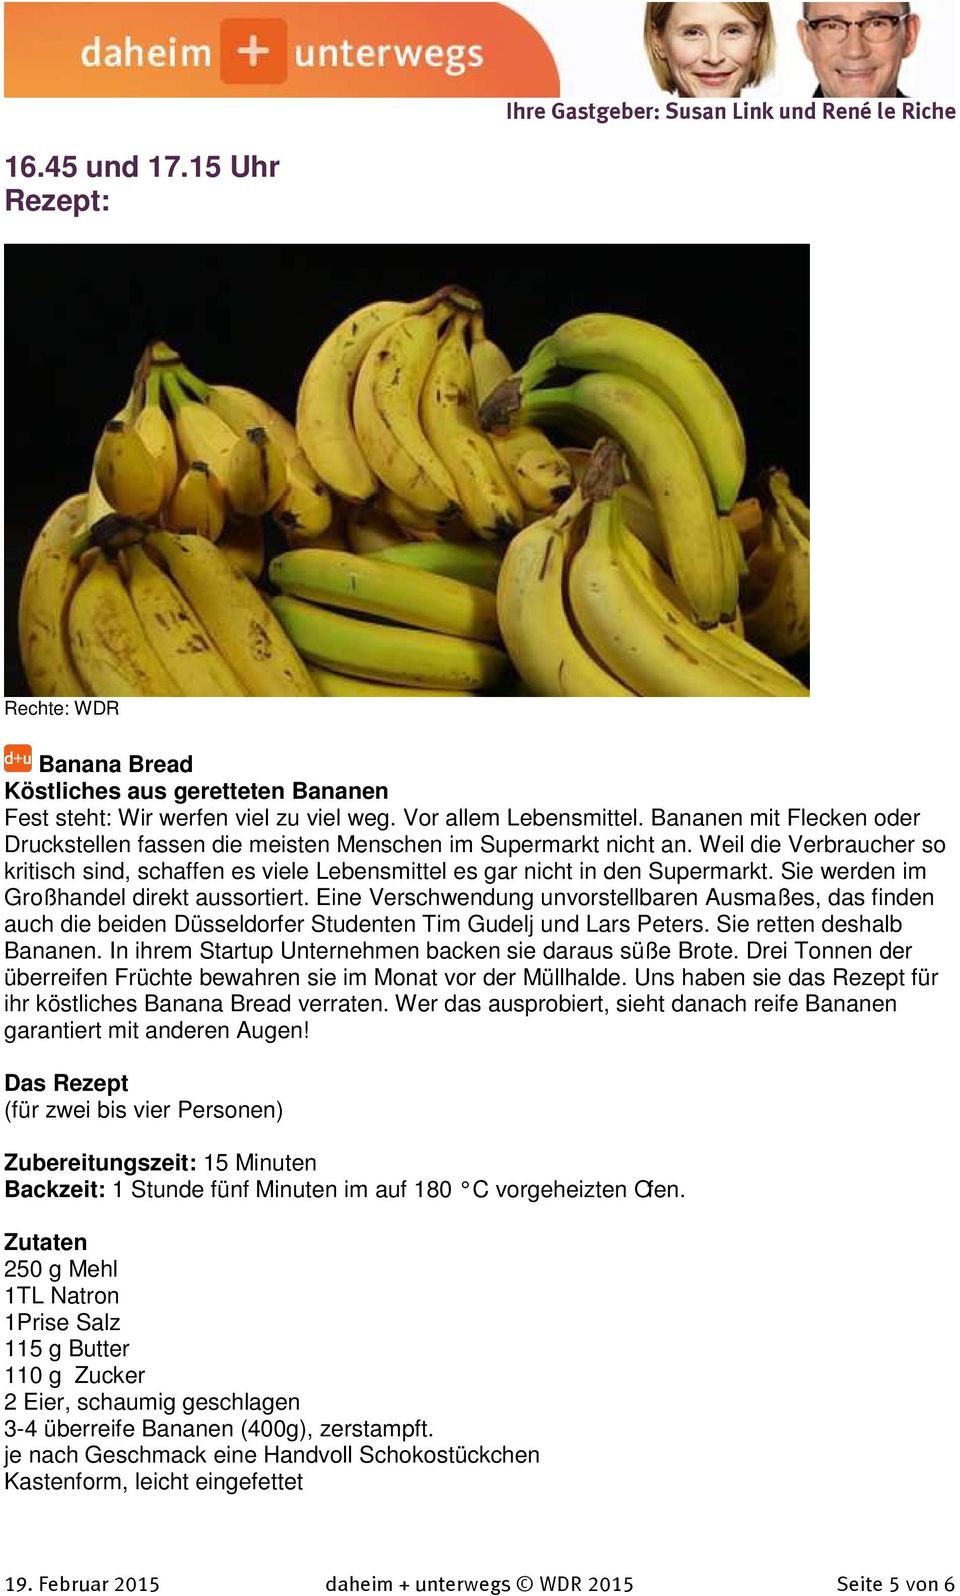 Sie werden im Großhandel direkt aussortiert. Eine Verschwendung unvorstellbaren Ausmaßes, das finden auch die beiden Düsseldorfer Studenten Tim Gudelj und Lars Peters. Sie retten deshalb Bananen.